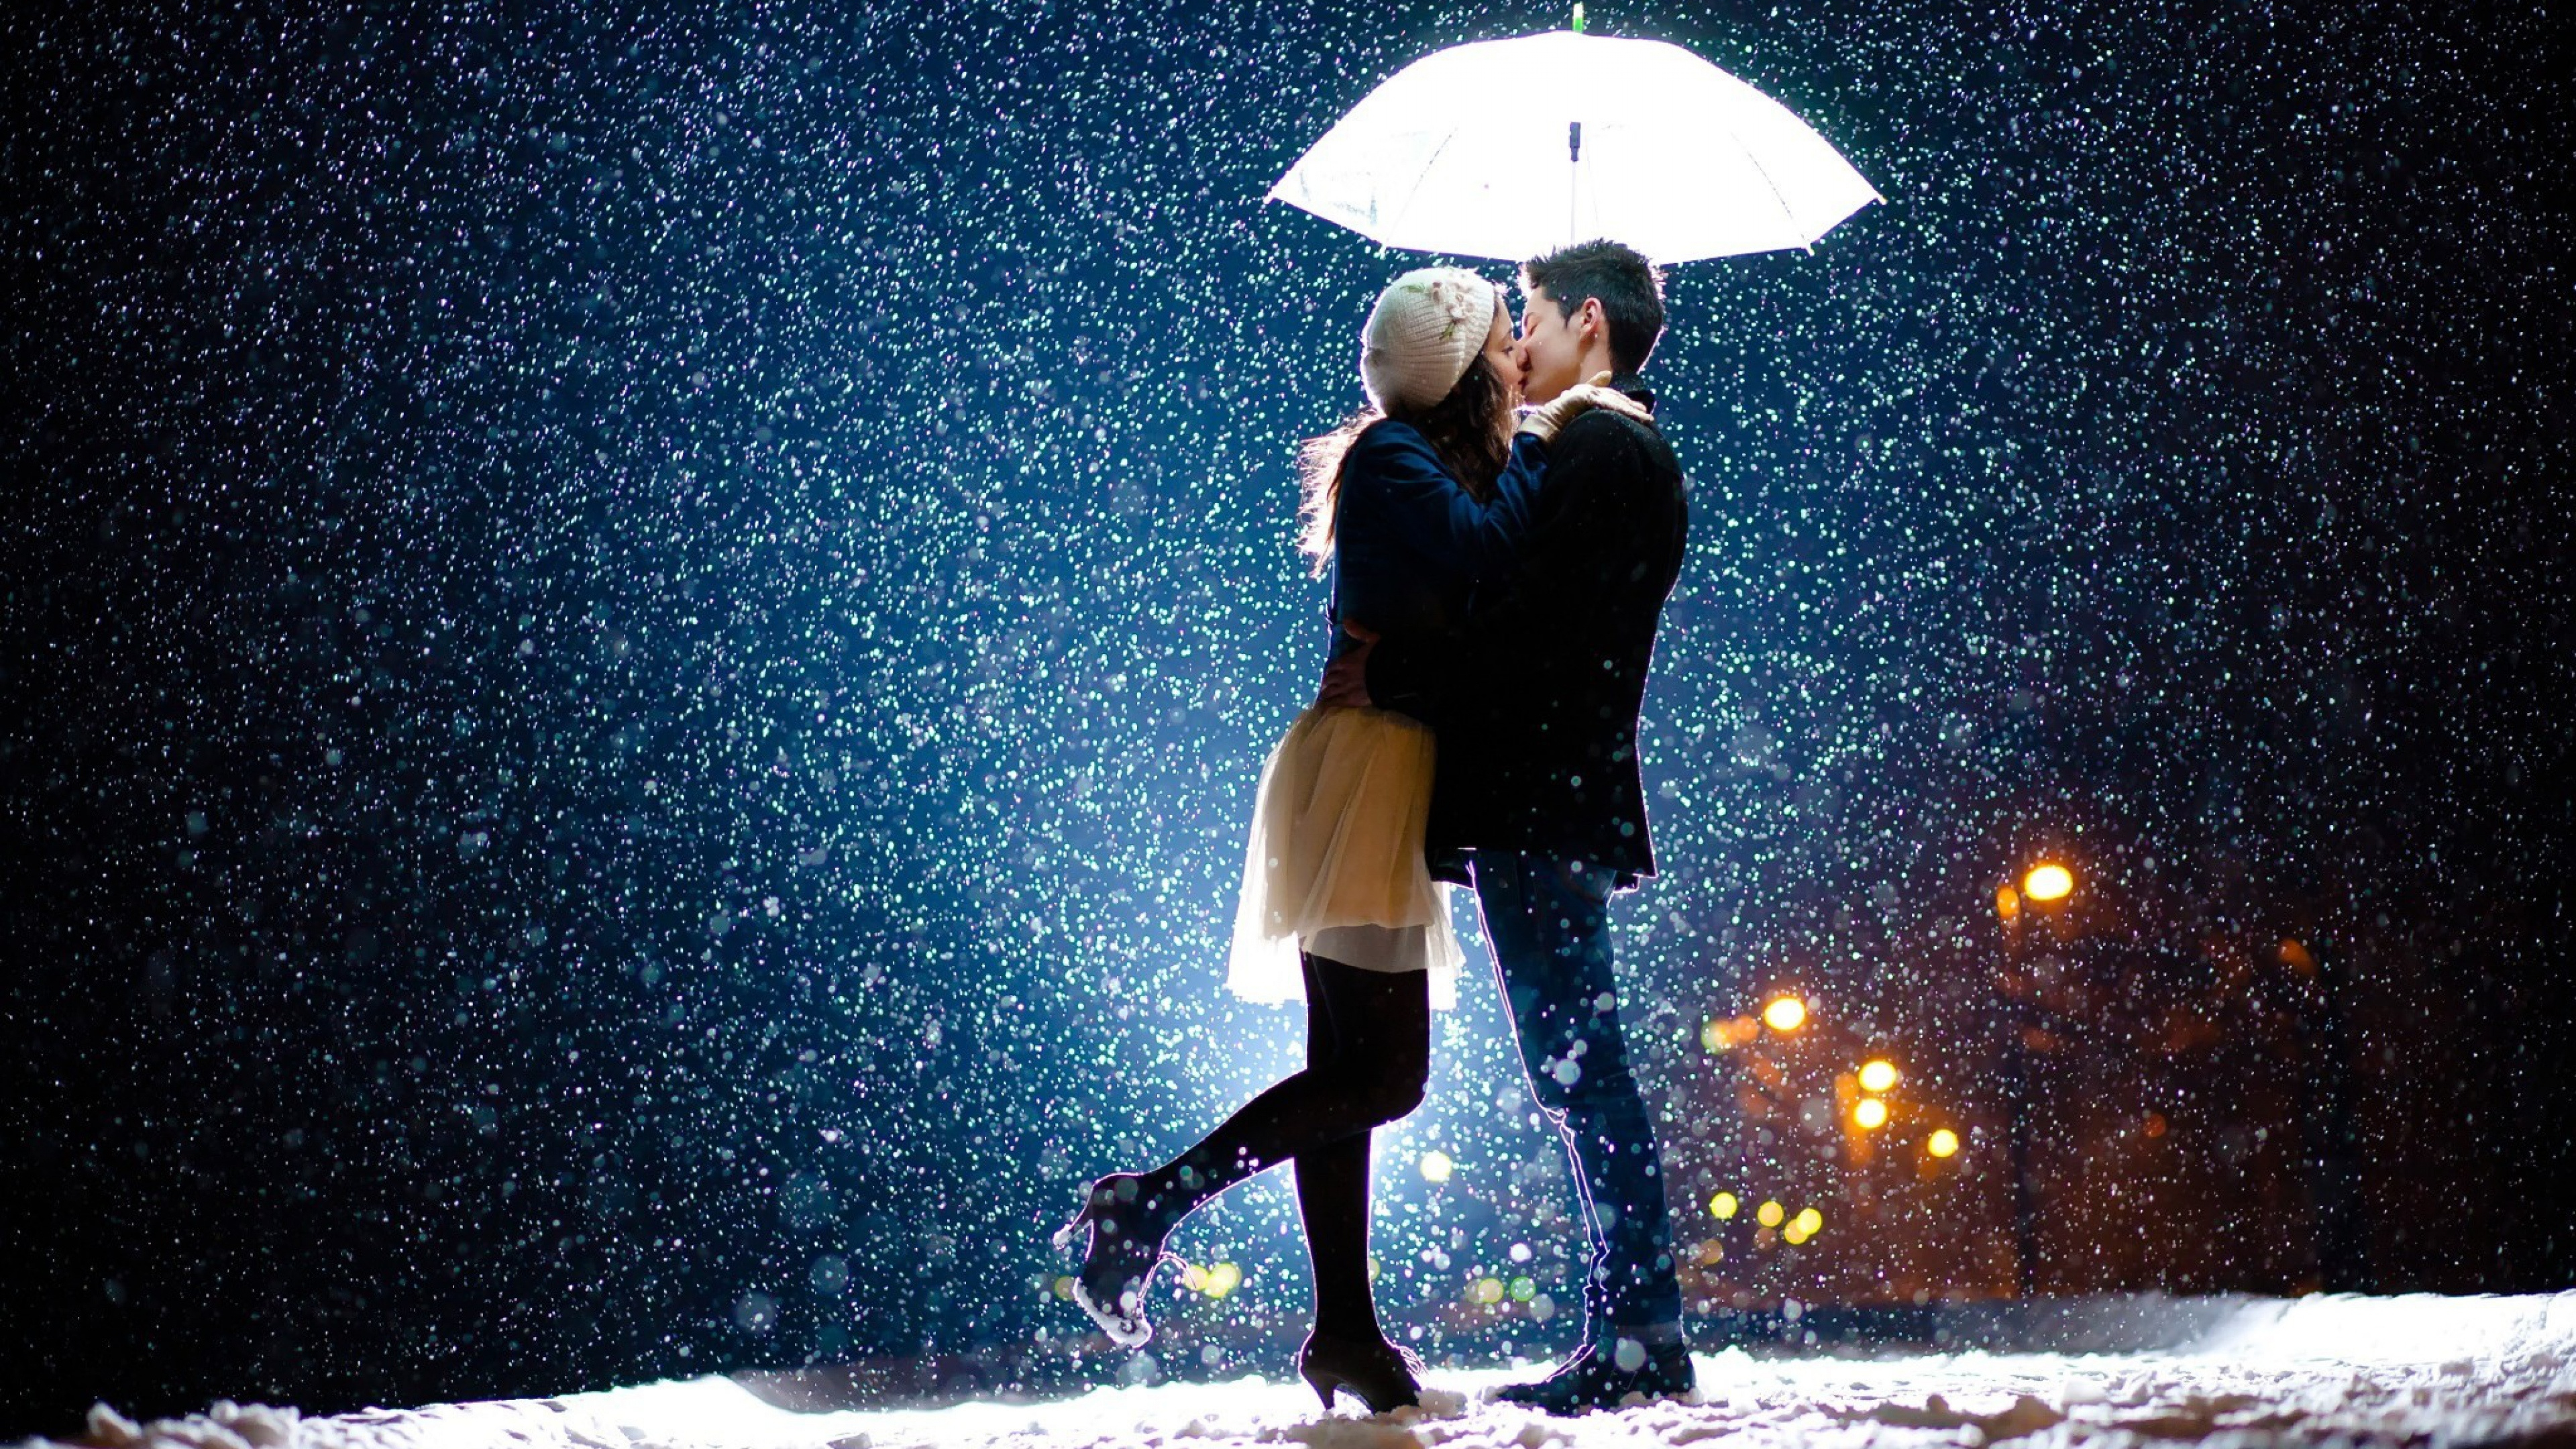 Romantik, Kuss, Ehepaar, Regenschirm, Schnee. Wallpaper in 3840x2160 Resolution